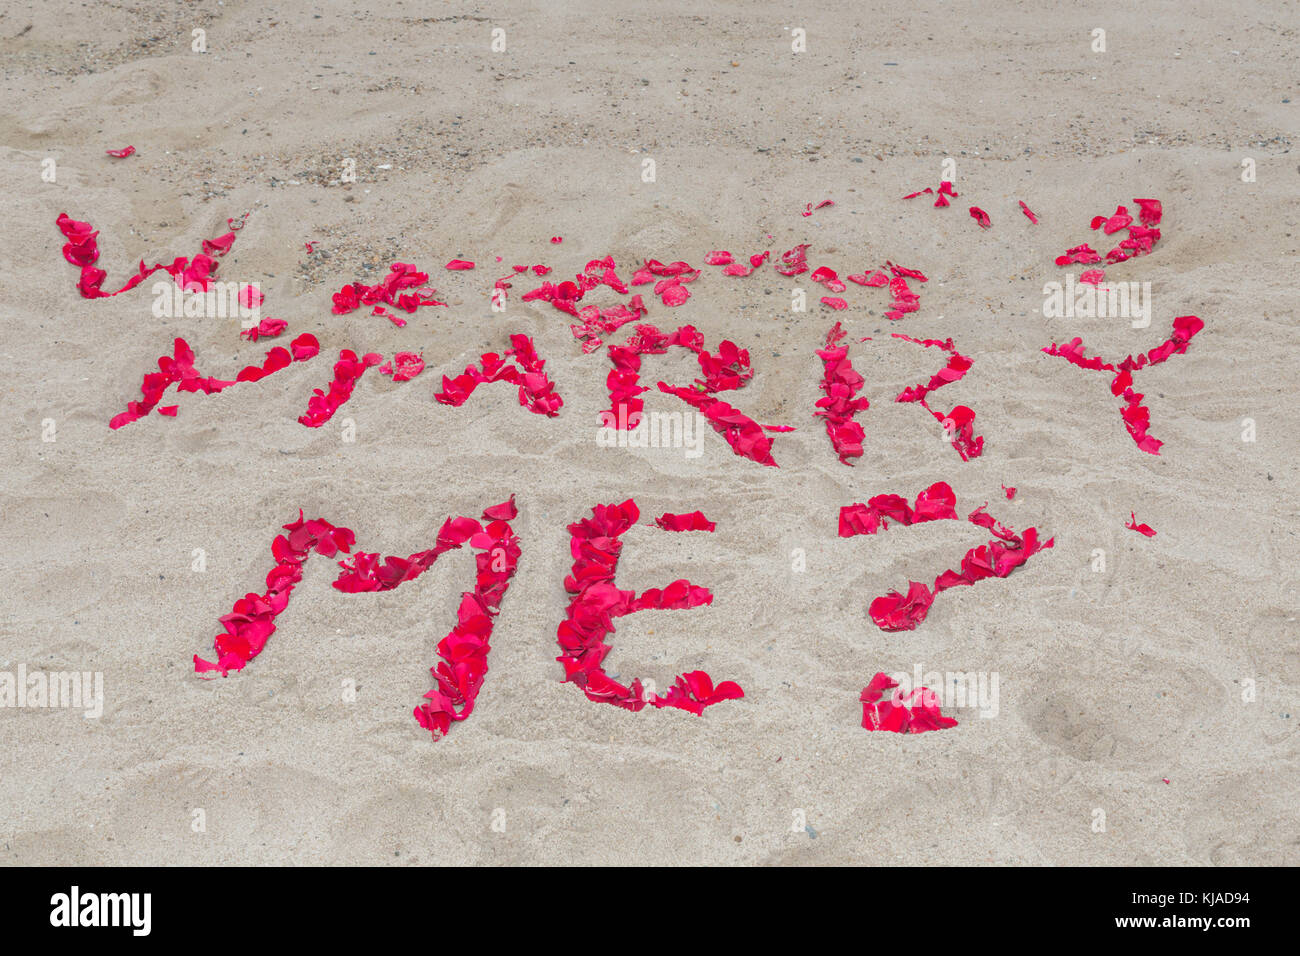 Die Frage mich heiraten im Umweltleitbild Rosenblätter auf ein Meer Strand, montuak, NY Stockfoto